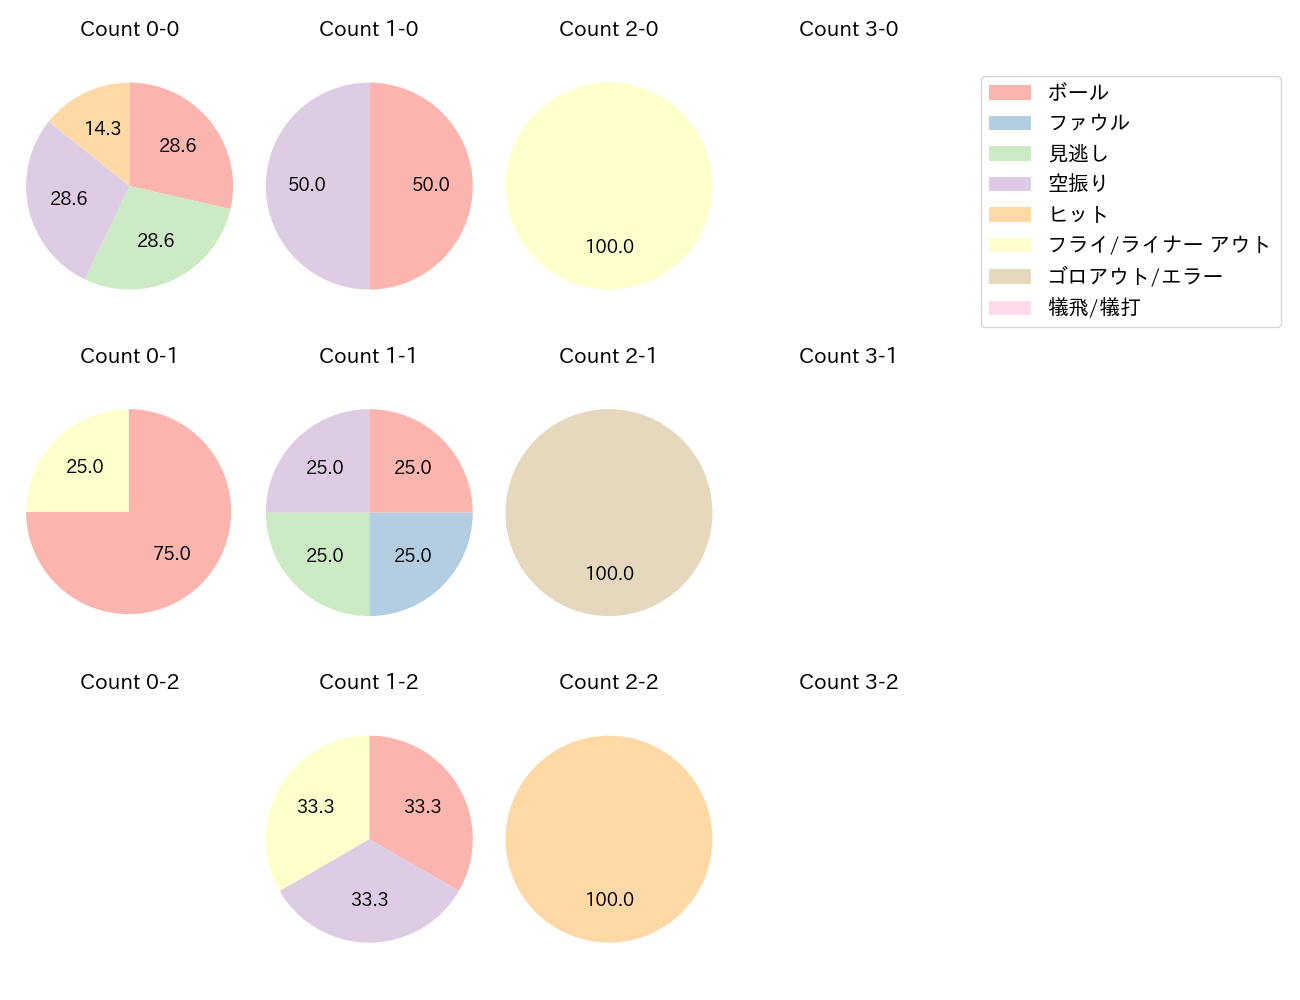 廣岡 大志の球数分布(2021年7月)